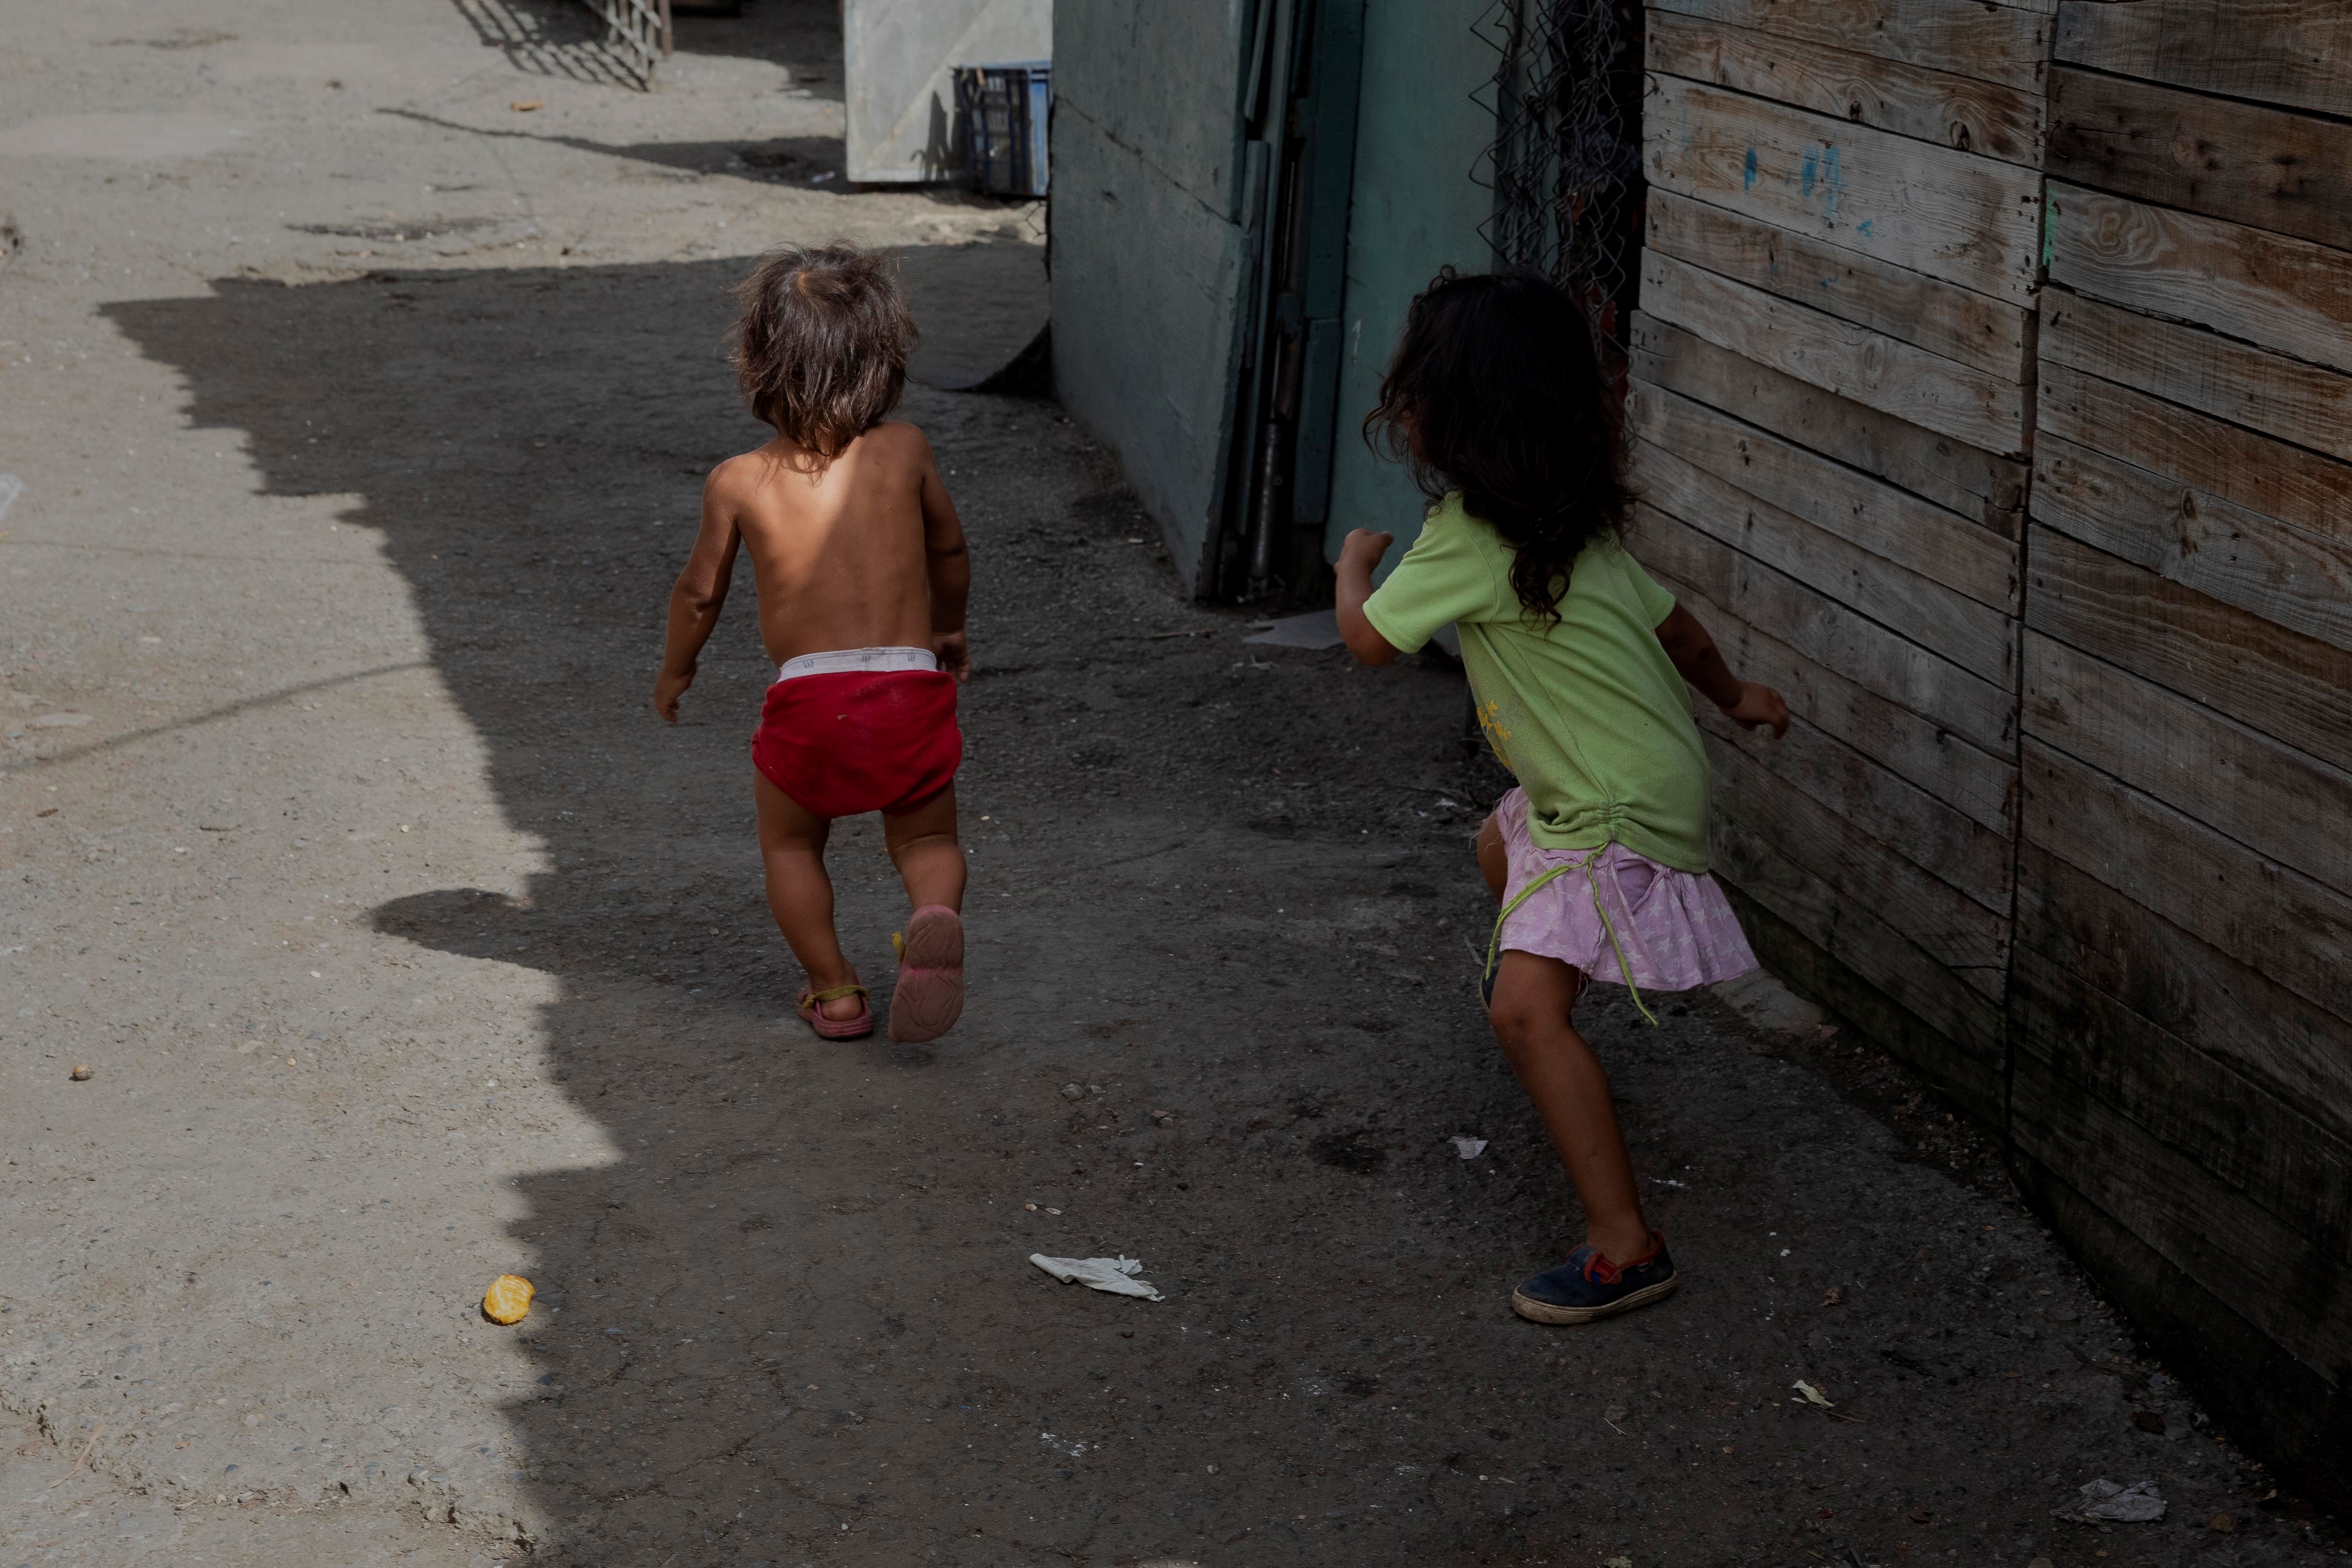 Zulia, Miranda, Carabobo y el Distrito Capital, las ciudades que más reportan maltrato infantil durante la pandemia